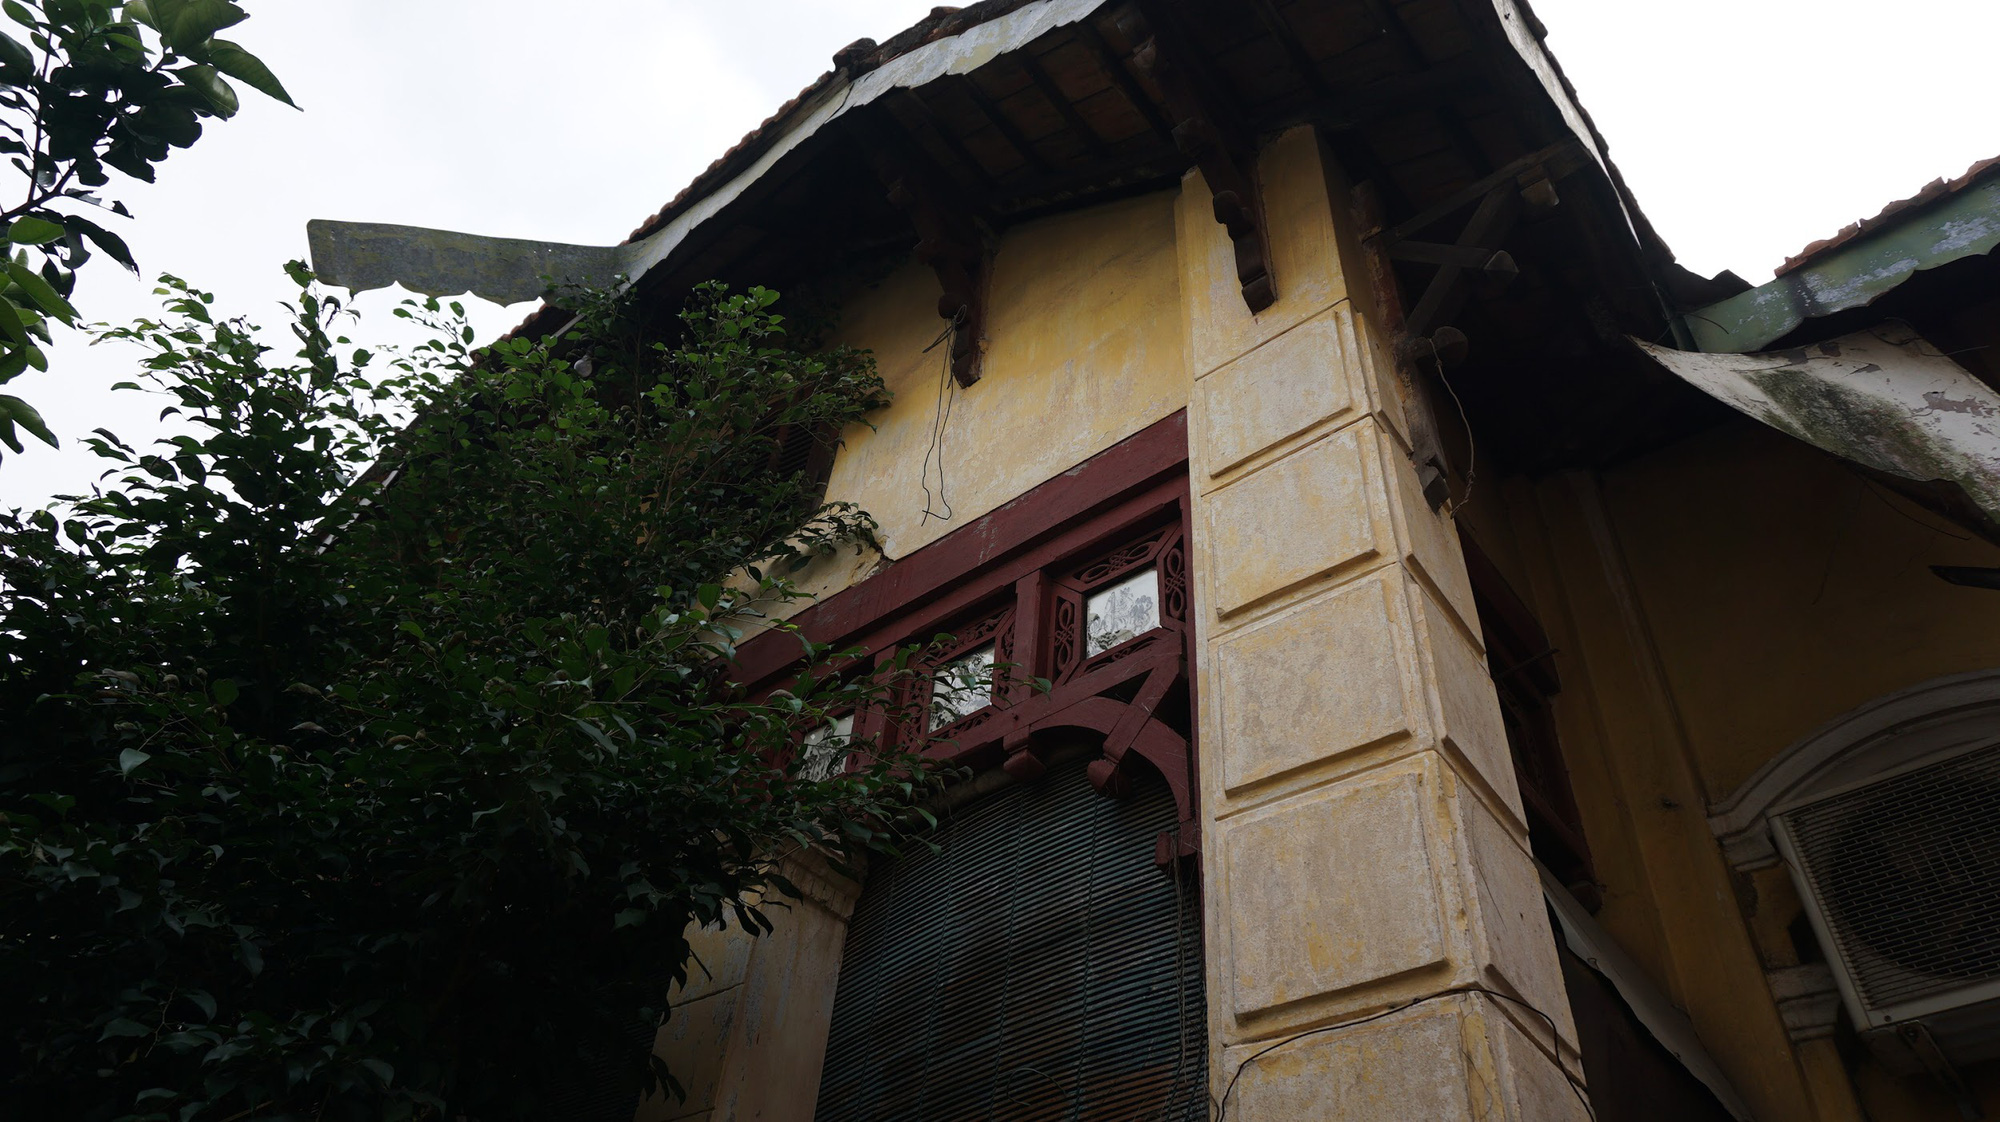 Bí ẩn ngôi nhà “đỏ rực” nổi tiếng nhất nhì làng cổ Cự Đà - Ảnh 8.